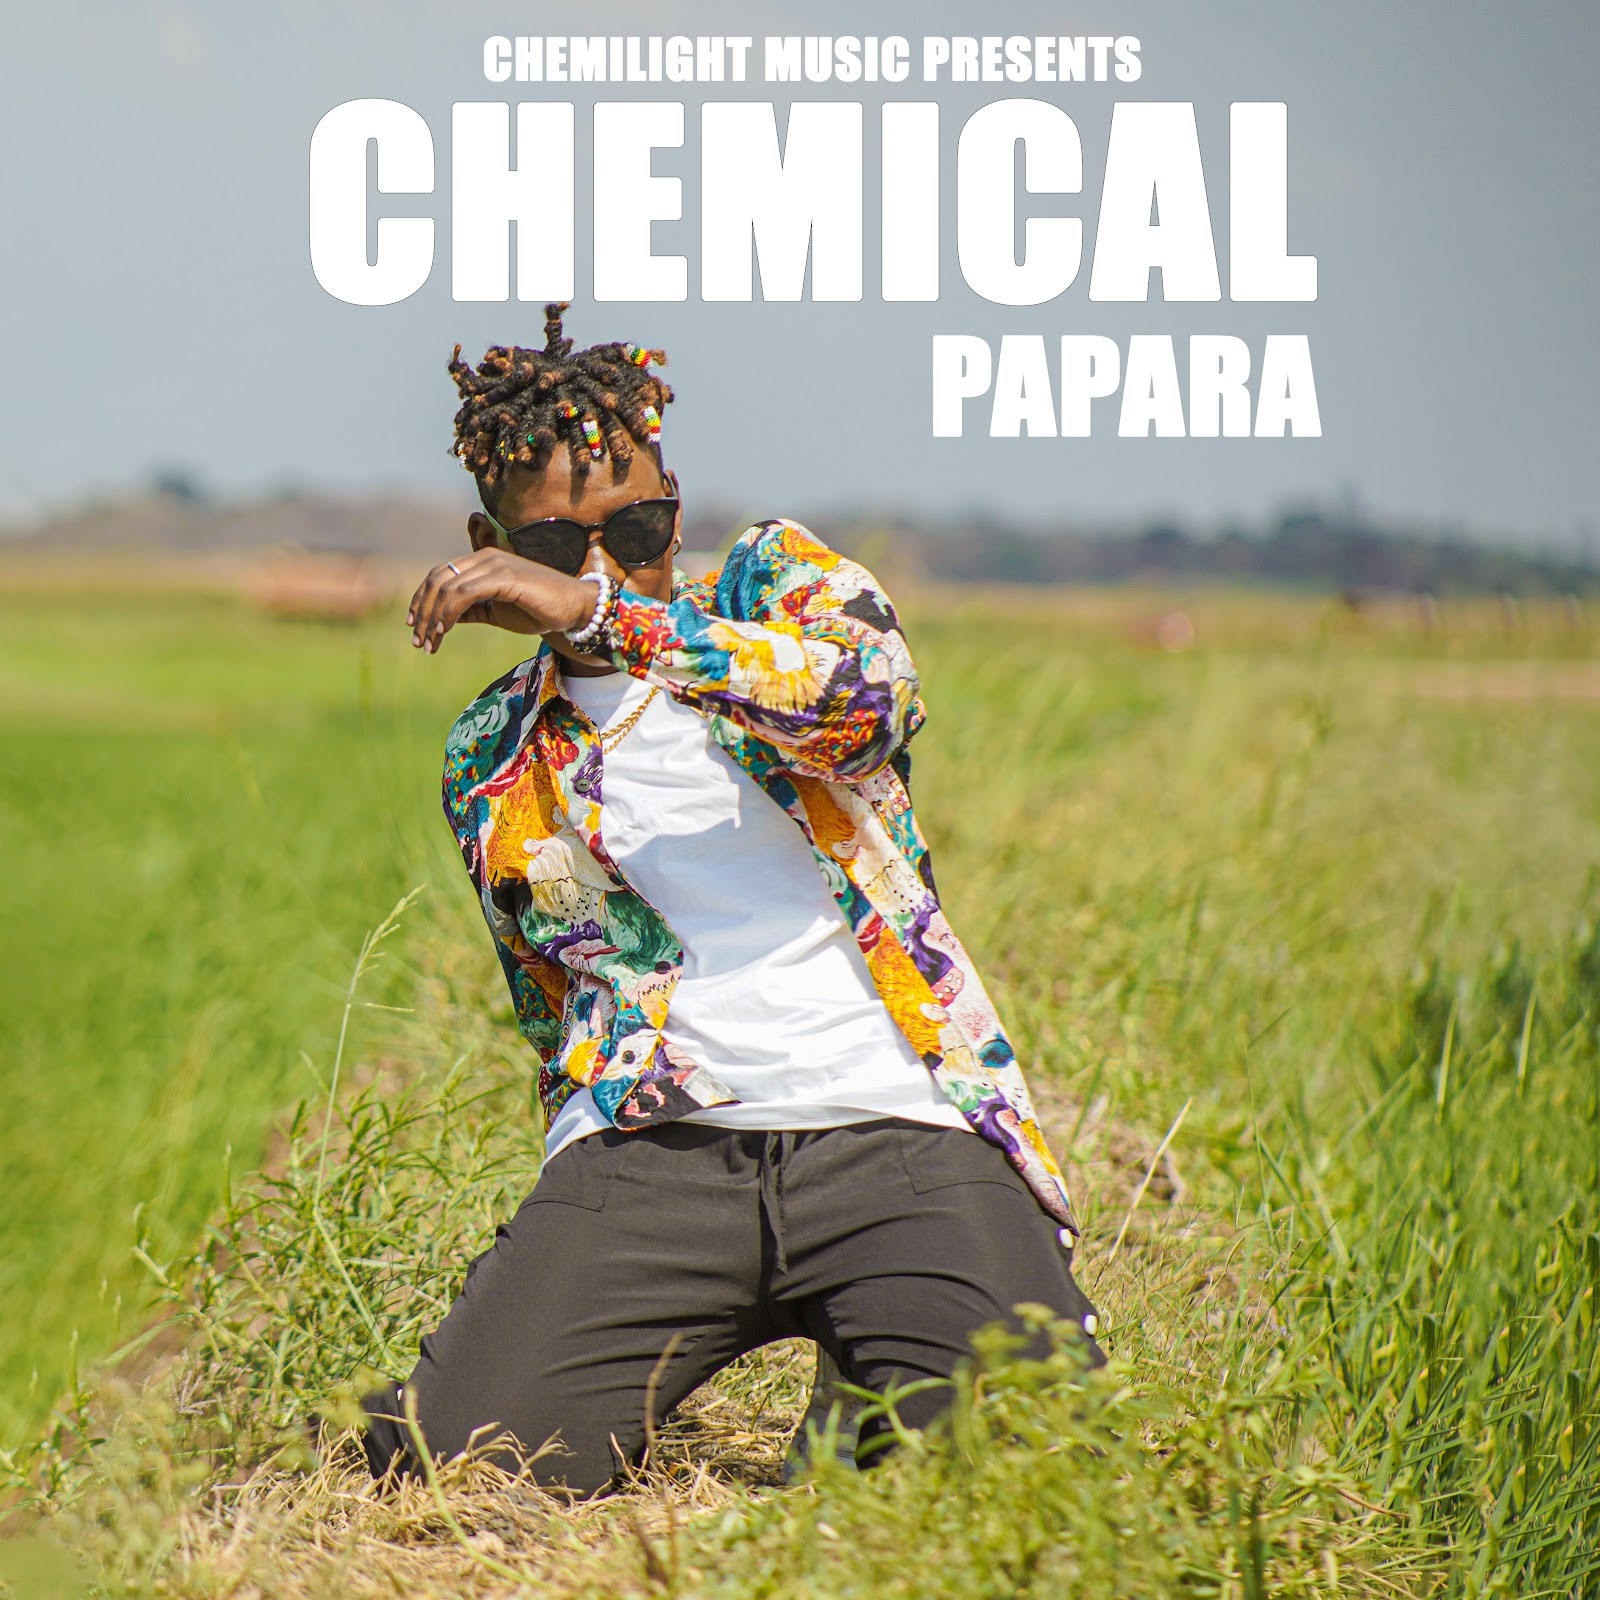 Chemical – Papara